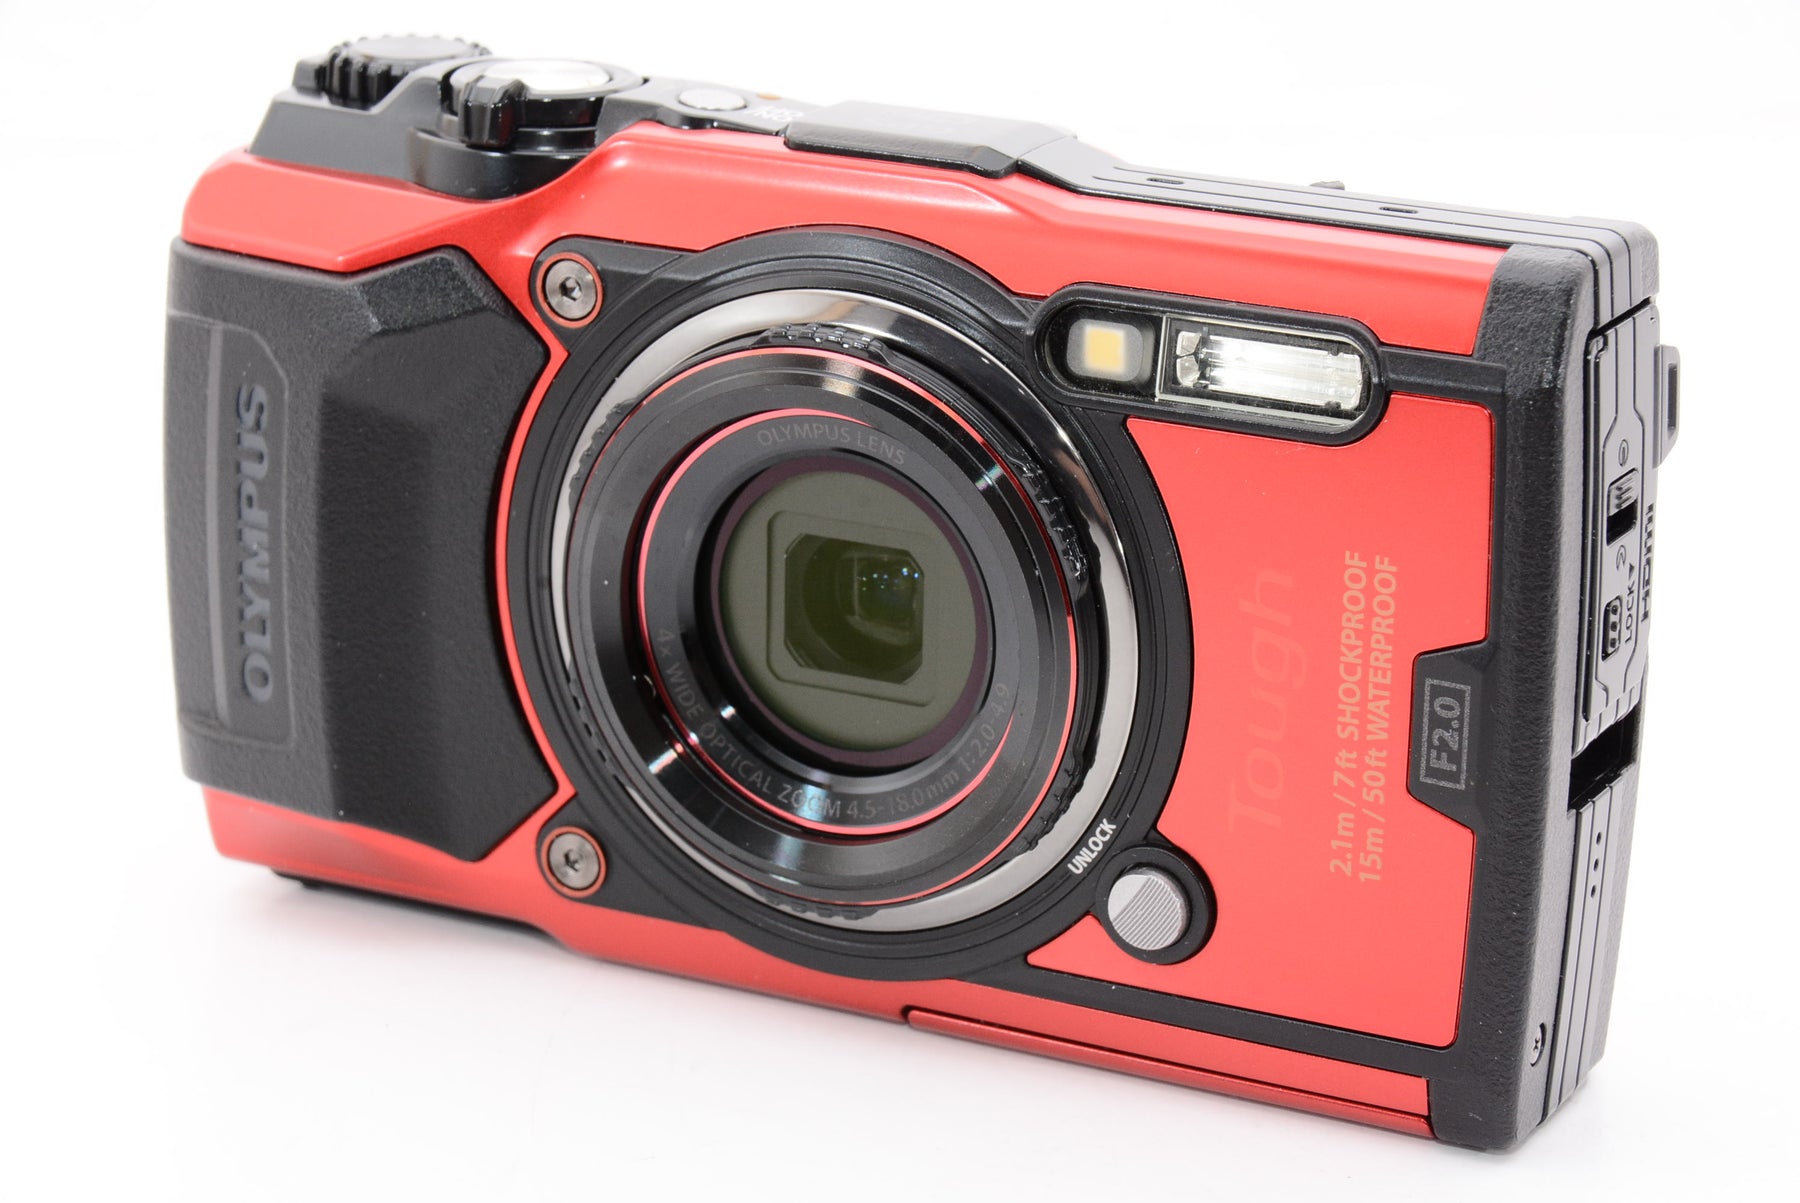 【外観特上級】OLYMPUS デジタルカメラ Tough TG-6 レッド 1200万画素CMOS F2.0 15m 防水 100kgf耐荷重 GPS  内蔵Wi-Fi TG-6RED